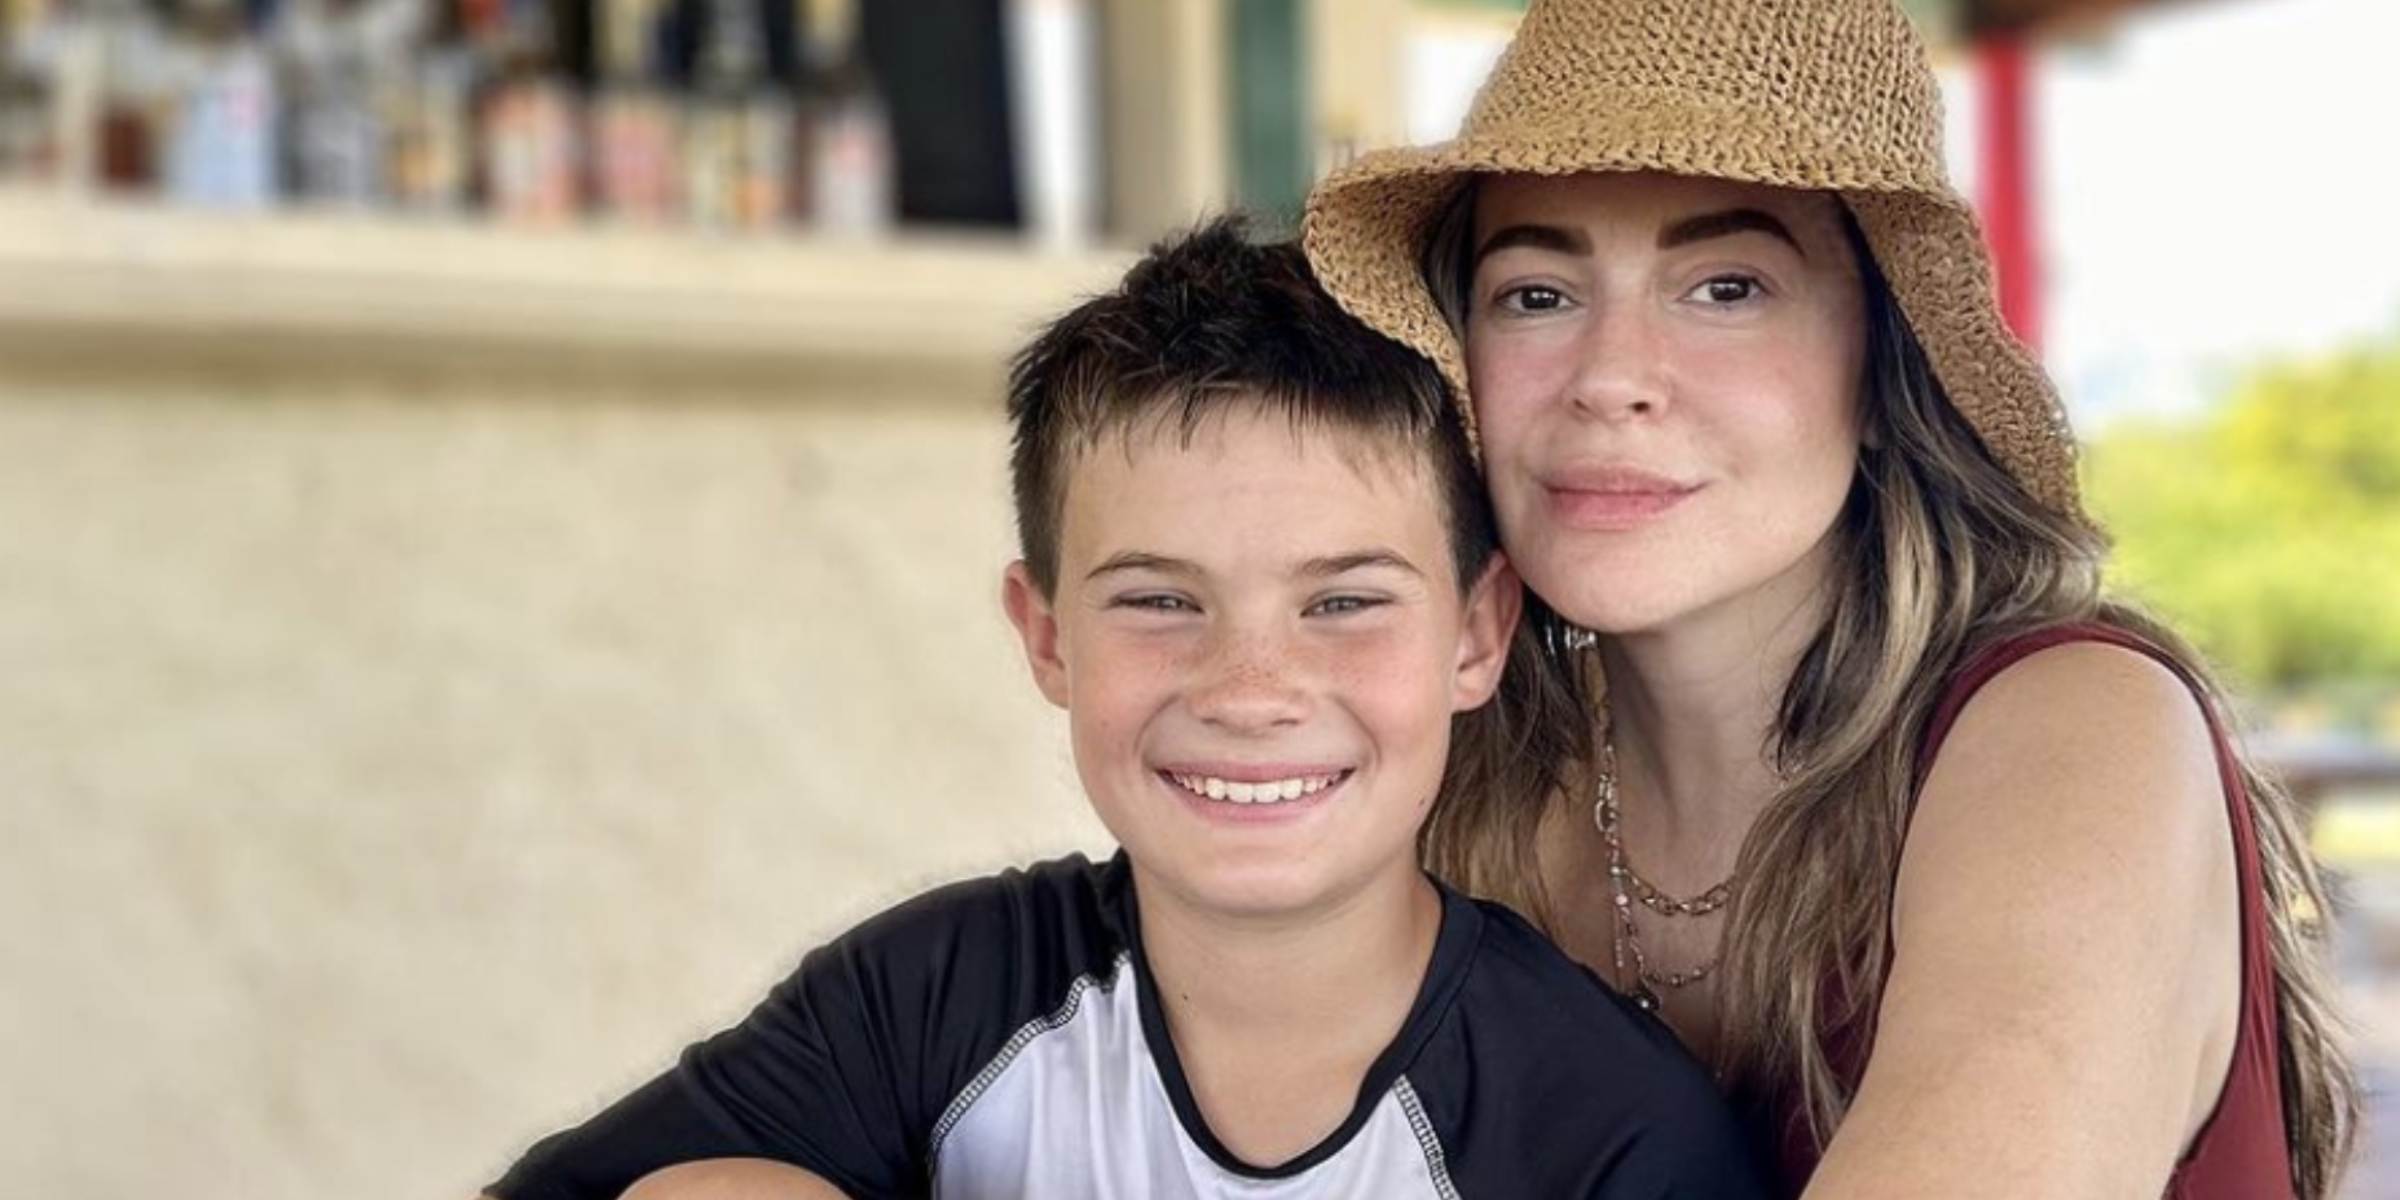 Alyssa Milano and her son, Milo | Source: Instagram.com/milano_alyssa/